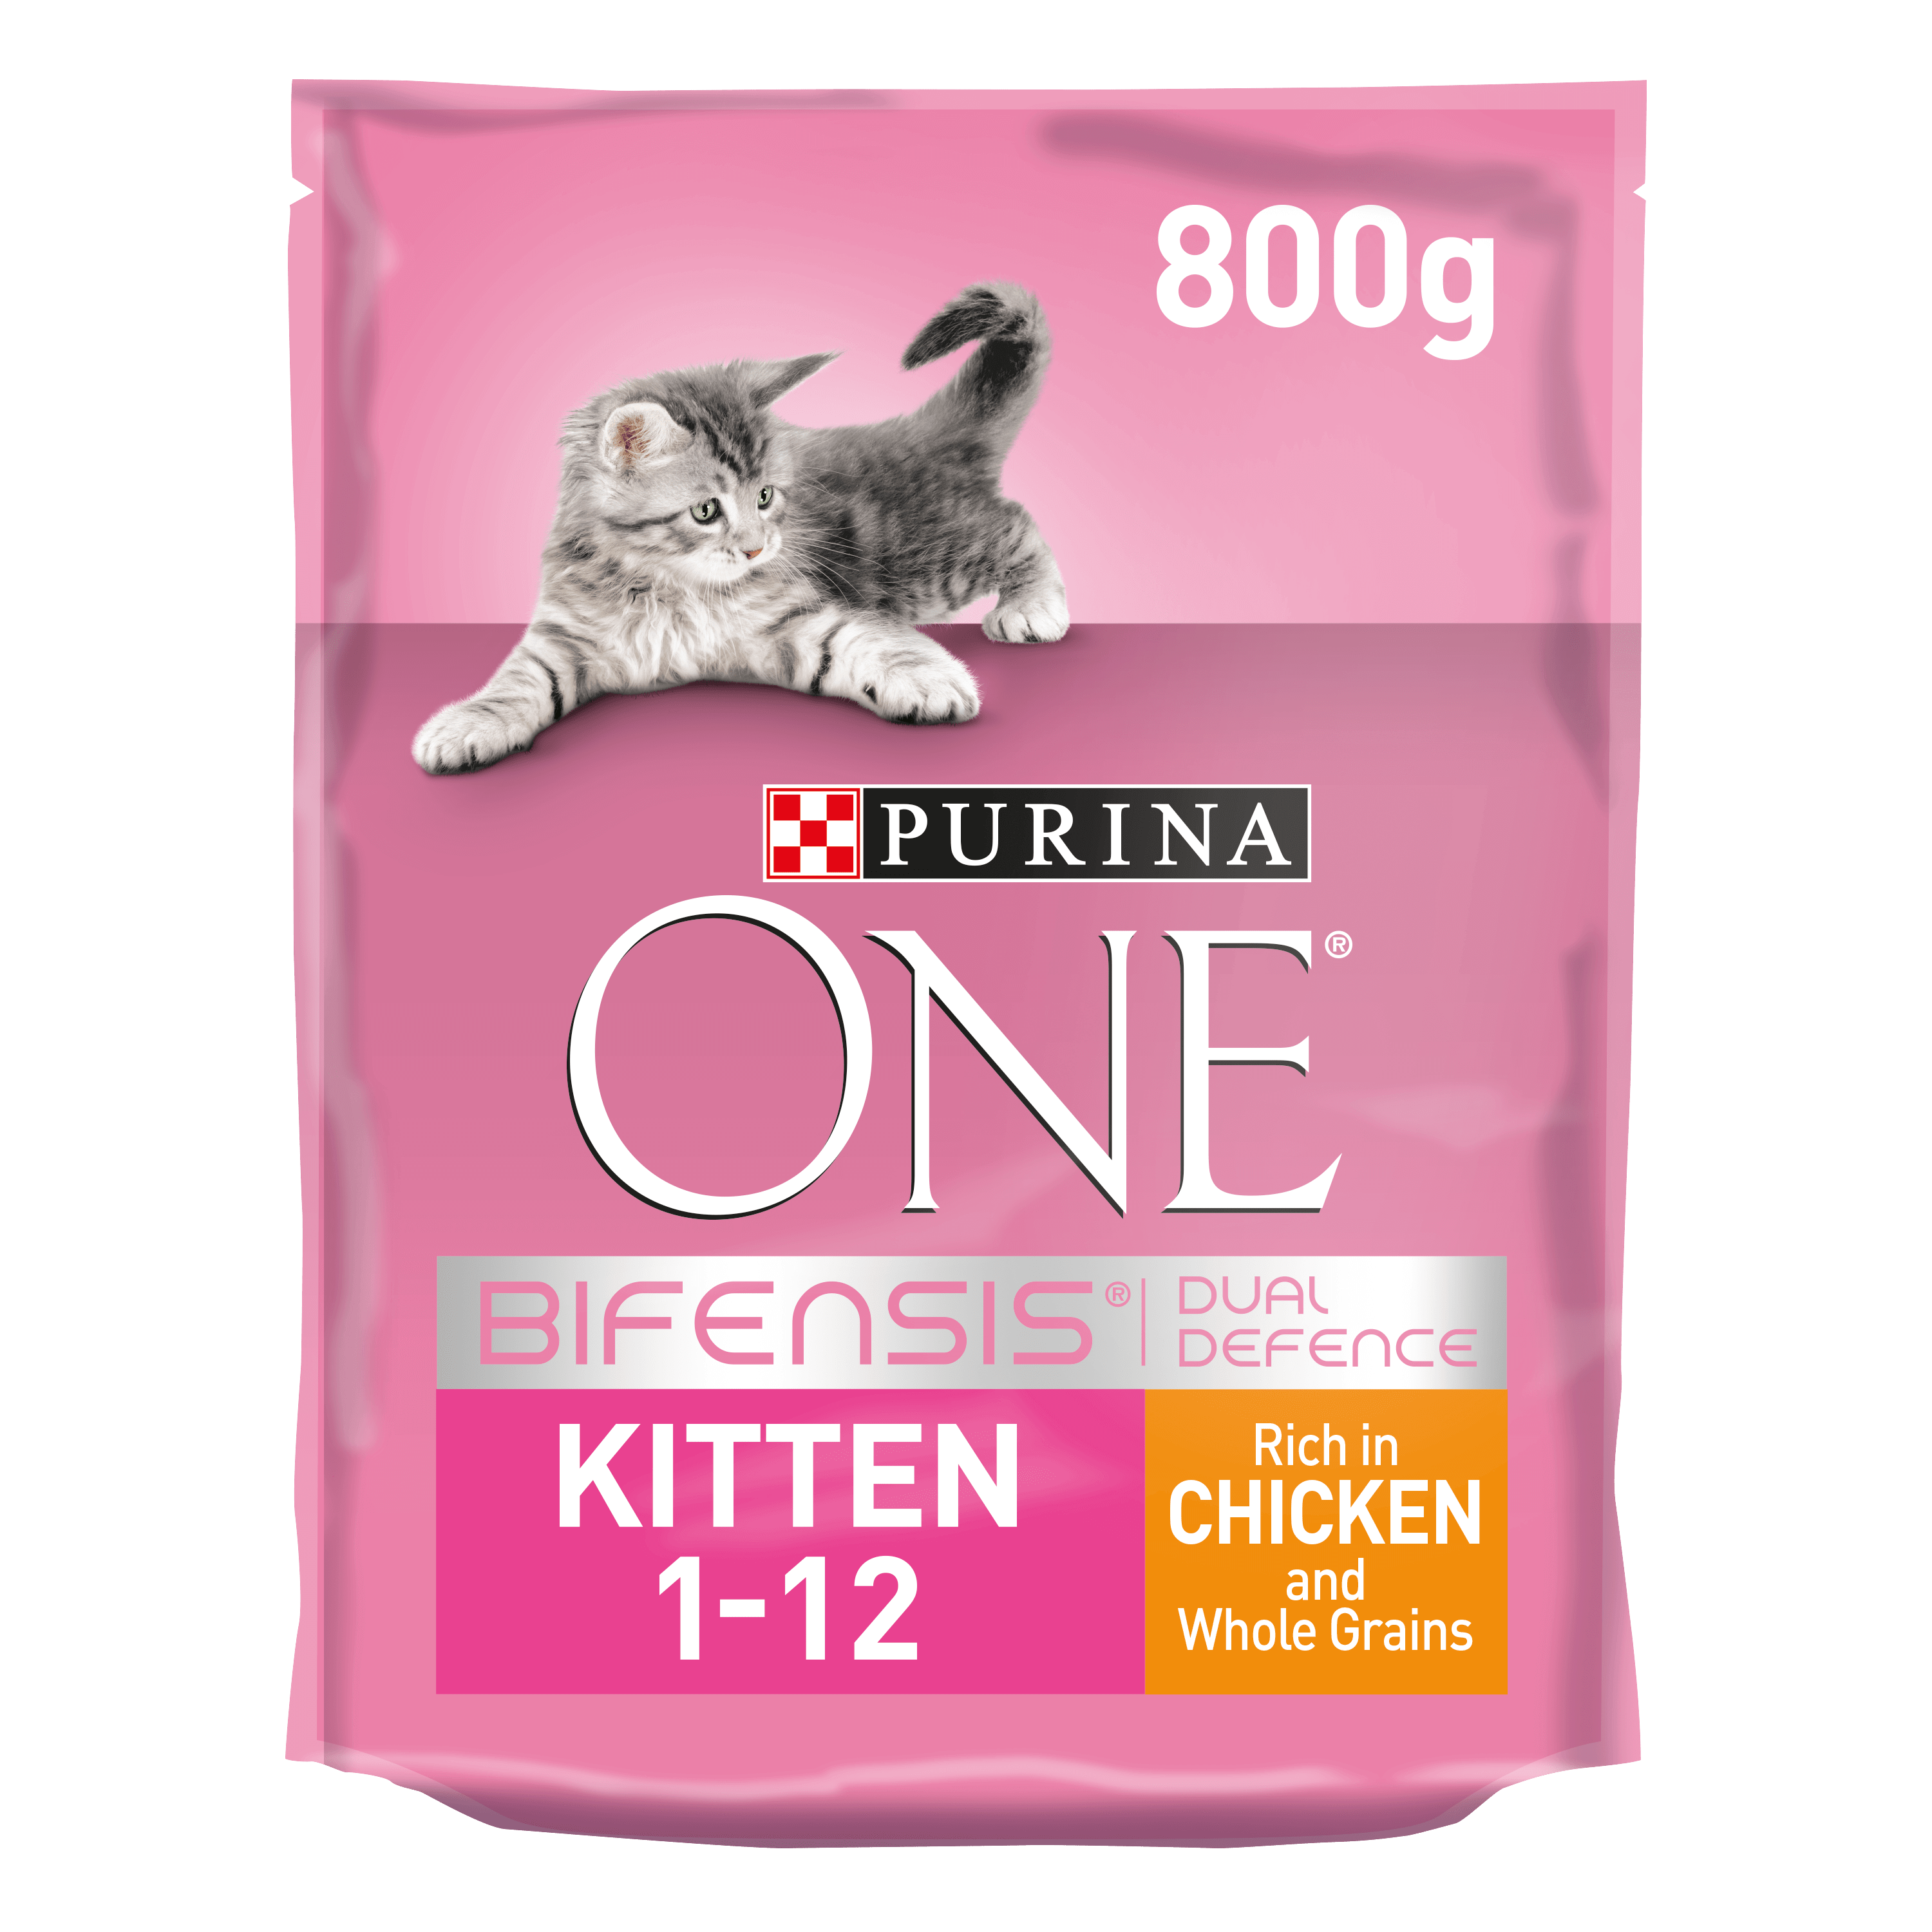 PURINA ONE® Rich in Chicken Kitten Food